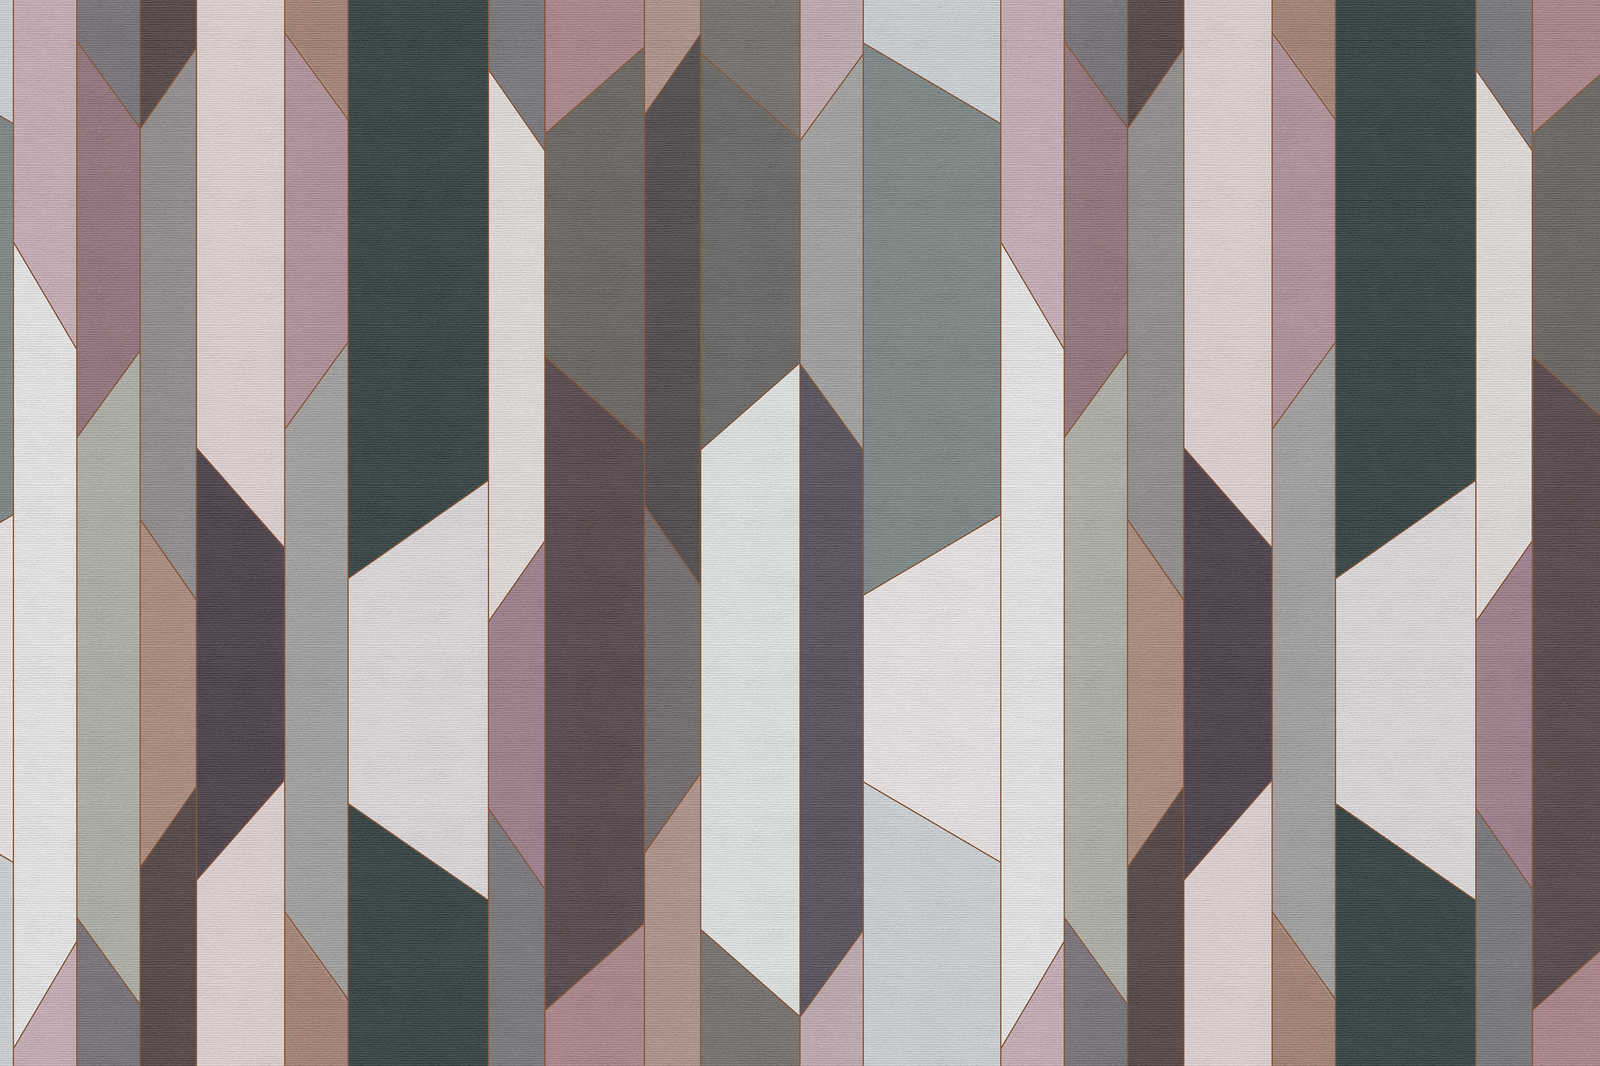             Vouw 2 - Canvas schilderij met geometrisch retro patroon - 0.90 m x 0.60 m
        